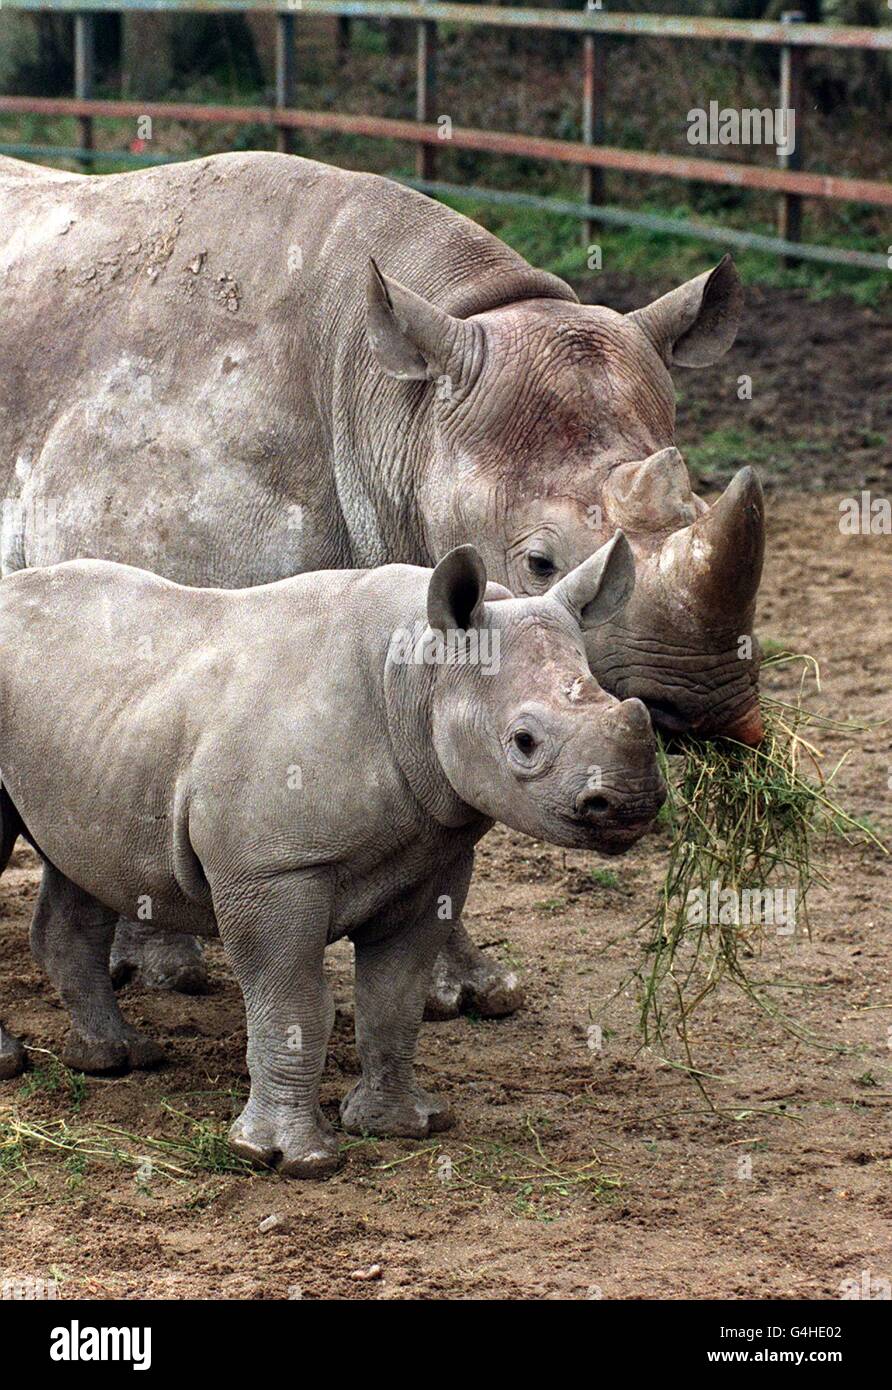 Tanya, âgée de cinq mois, avec sa mère Etna, au parc animalier de Port Lympne, dans le Kent.Tanya est le premier des trois rhinocéros nés dans le parc et on espère que les rares naissances triples en captivité aideront à arrêter l'extinction des races. Banque D'Images